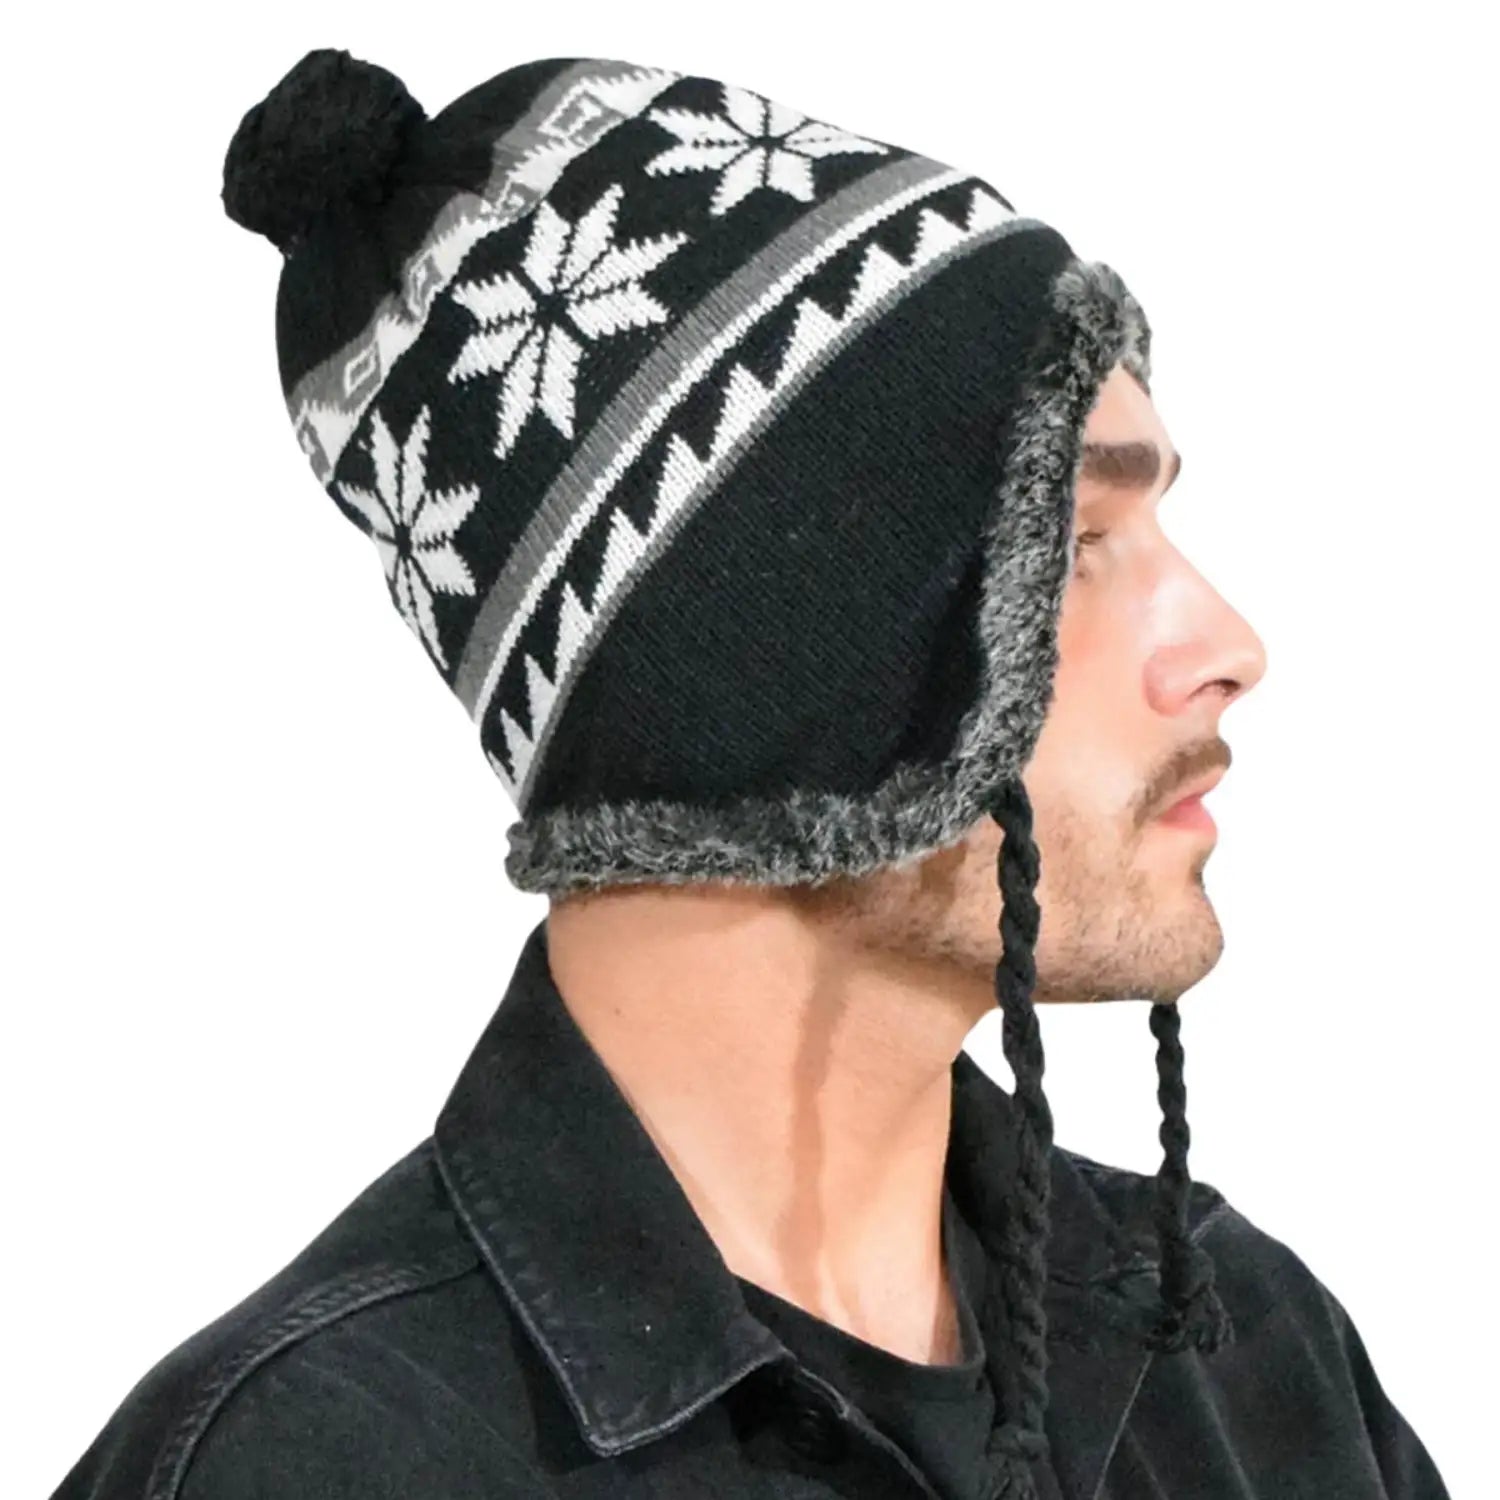 Unisex Peruvian Winter Hat - Snowflake Pattern, Fleece Lined